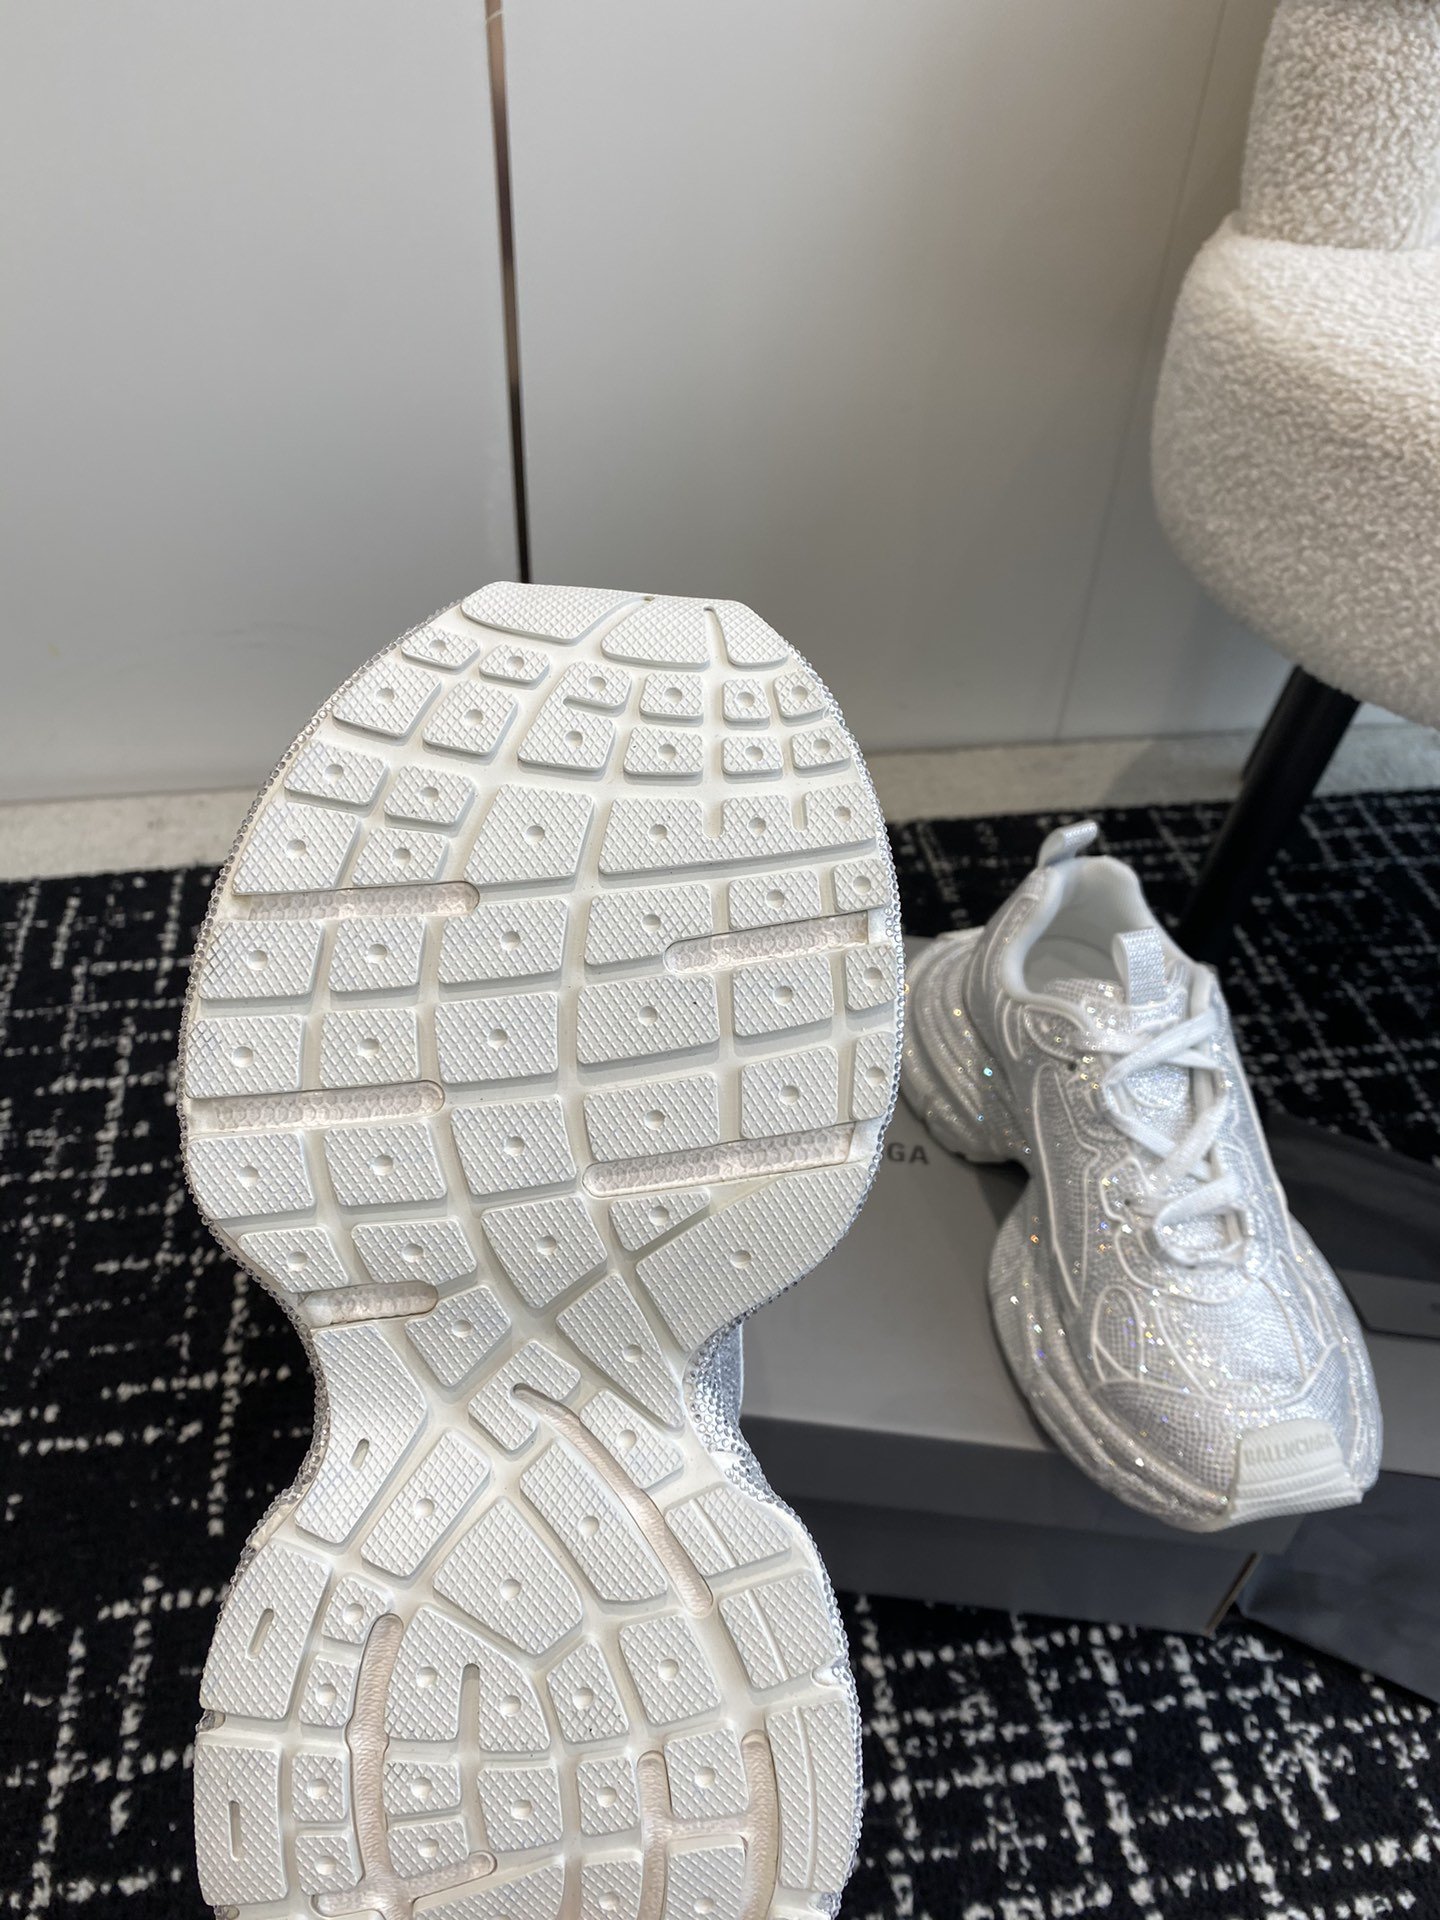 新款Balenciaga3XLSneaker满钻施华洛世奇系列鞋面鞋身全部用满钻覆盖整体呈现奢华感觉鞋型